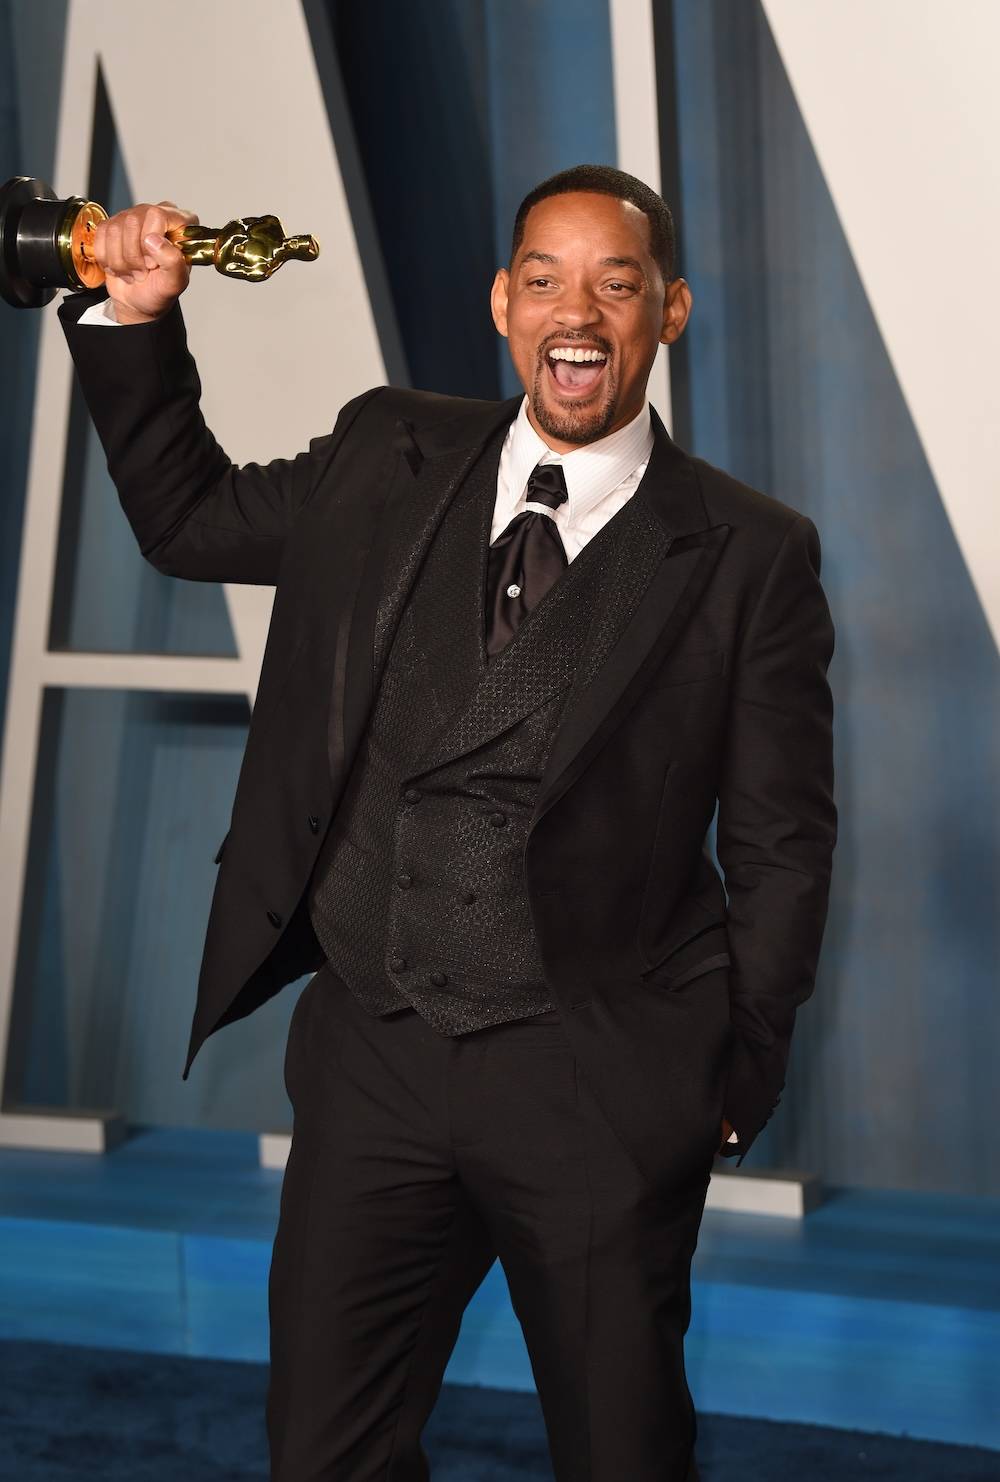 Odbierając Oscara, Will Smith nie odniósł się do faktu, że zaledwie chwilę wcześniej na tej samej scenie spoliczkował prowadzącego. (Fot. Getty Images)